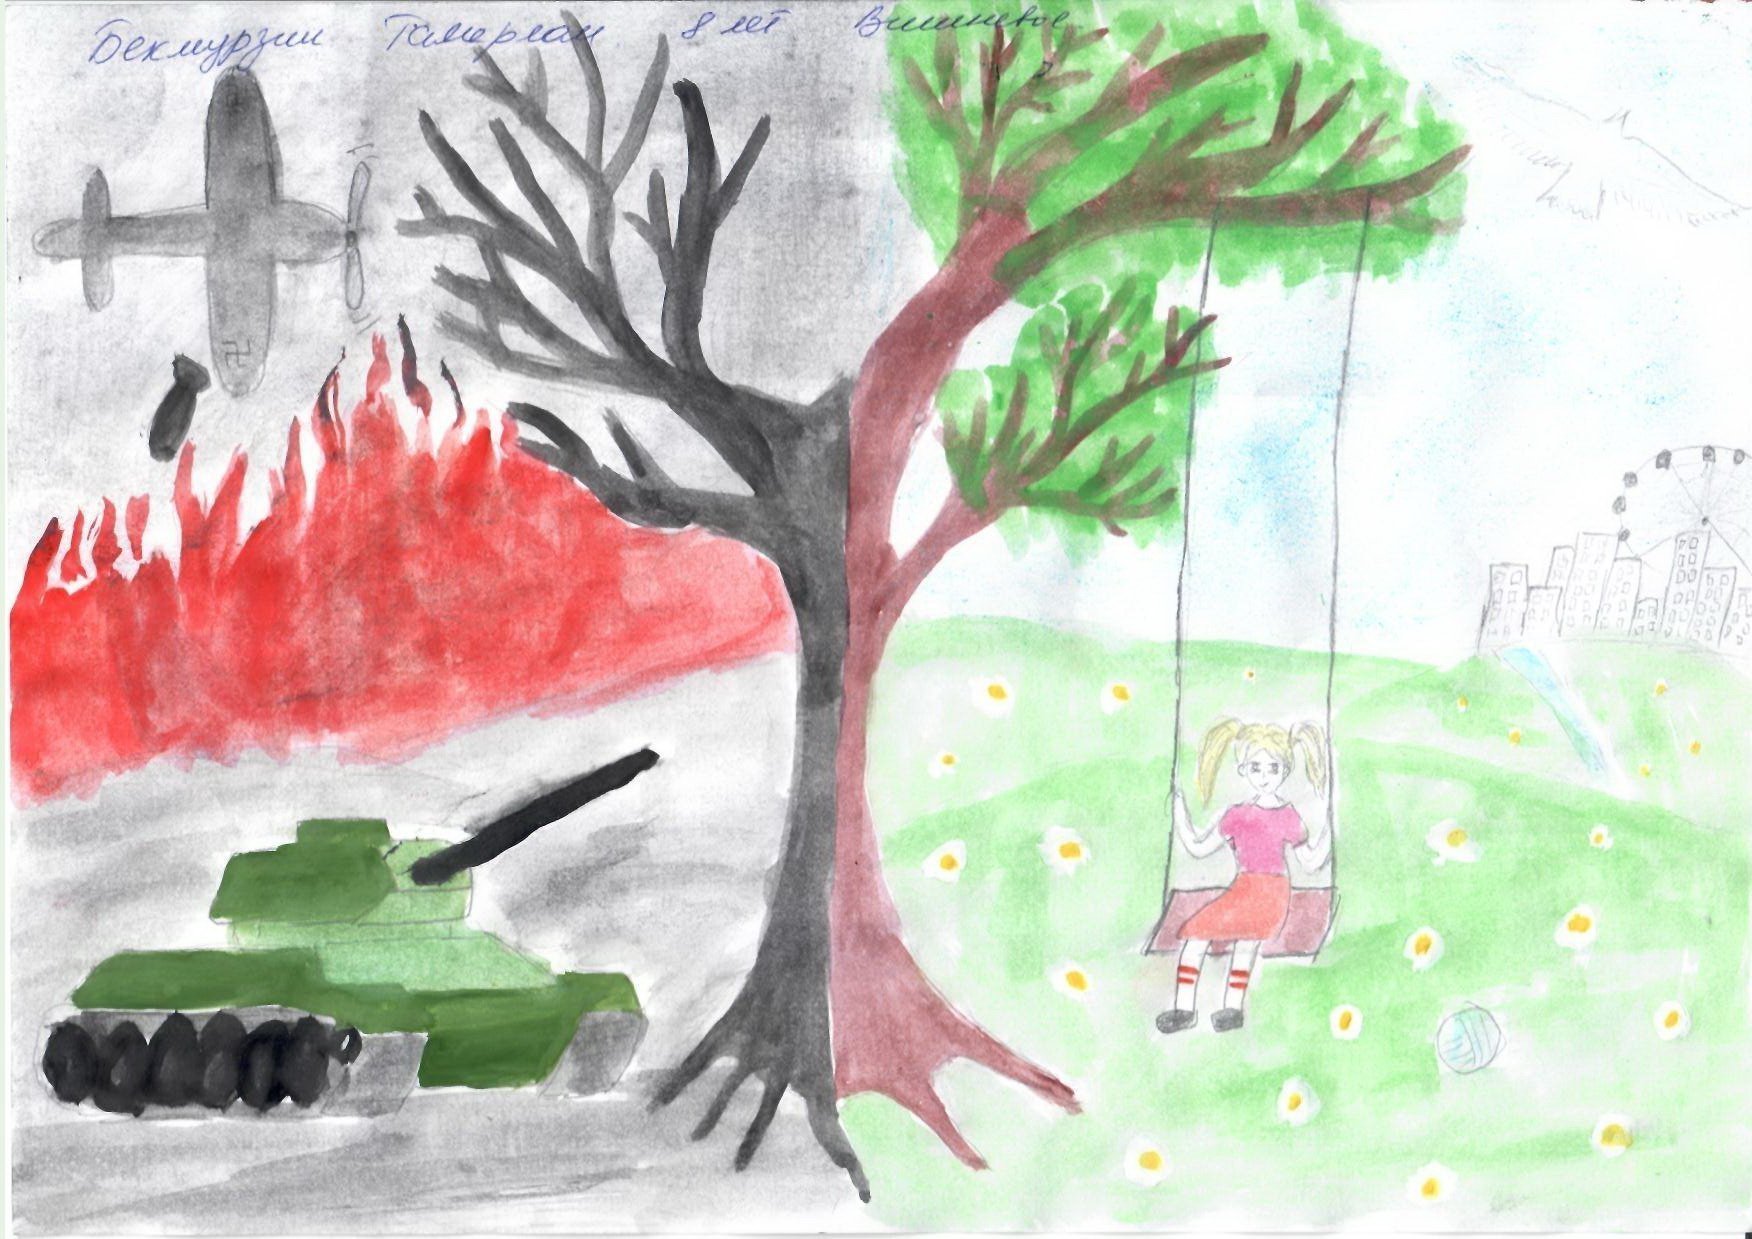 Война глазами ребенка рисунки детей